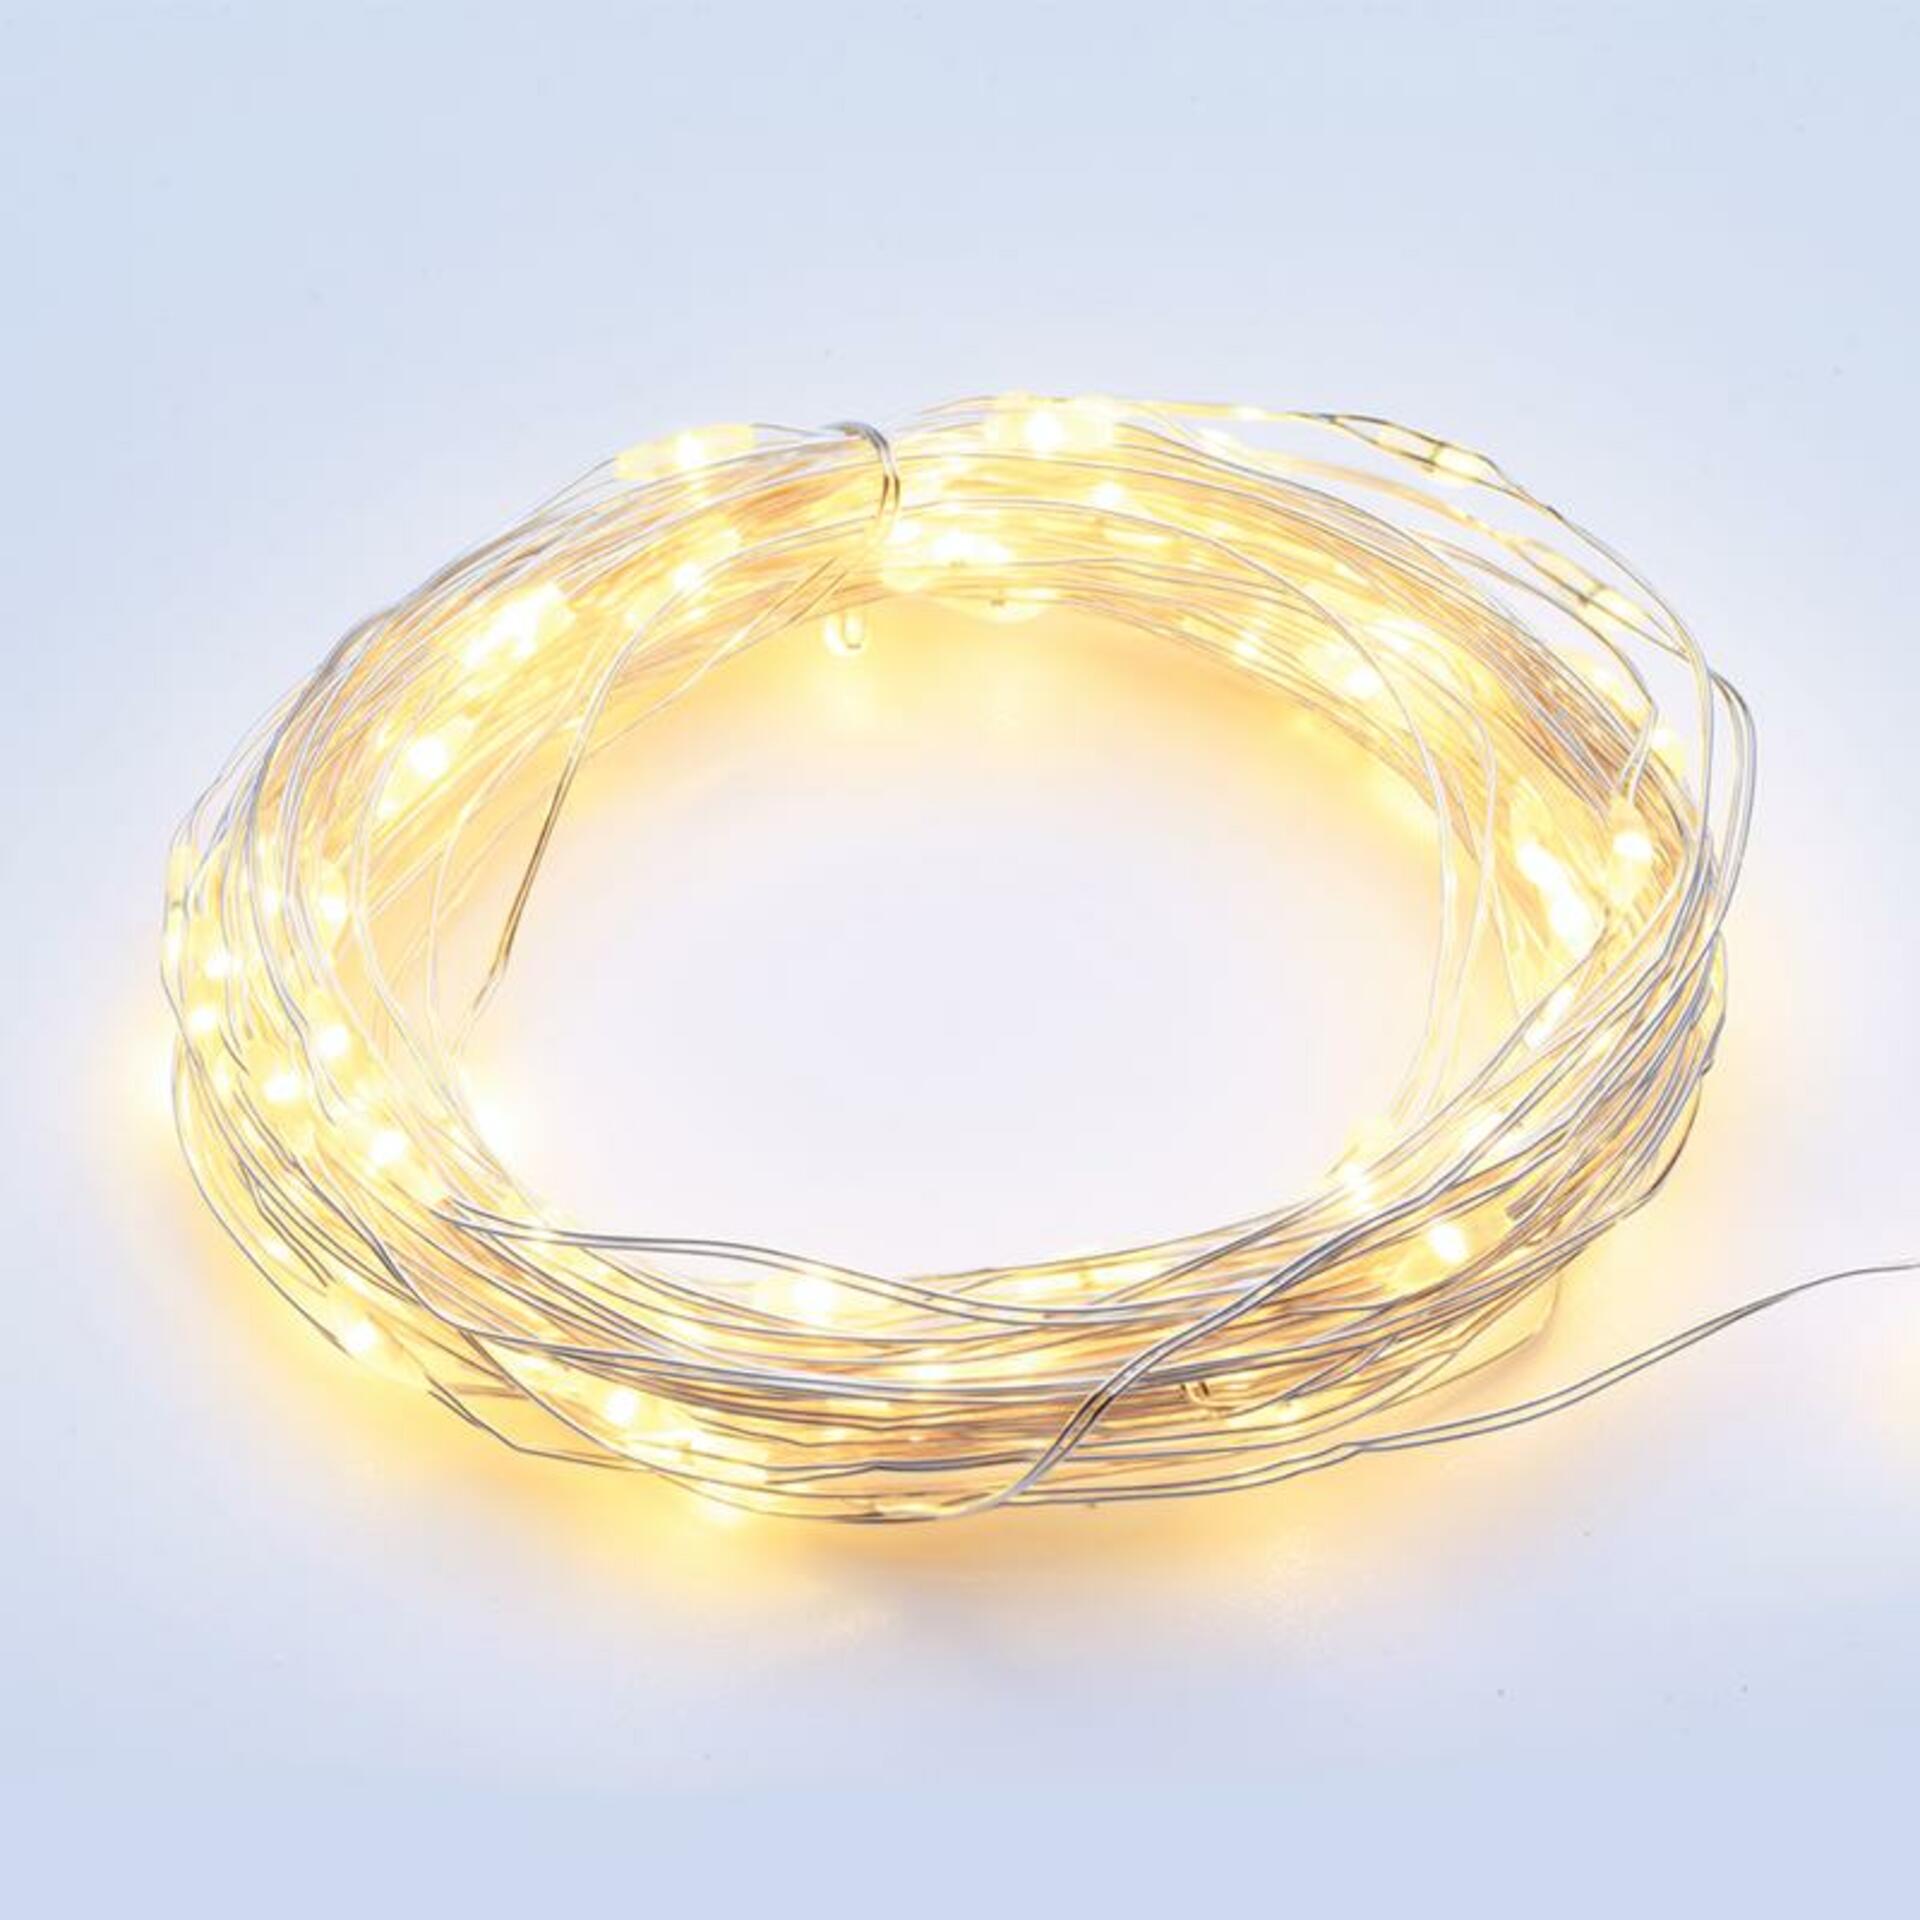 ACA Lighting 200 LED dekorační řetěz WW stříbrný měďený kabel 220-240V + 8 funkcí IP44 20m+3m 6W X01200112